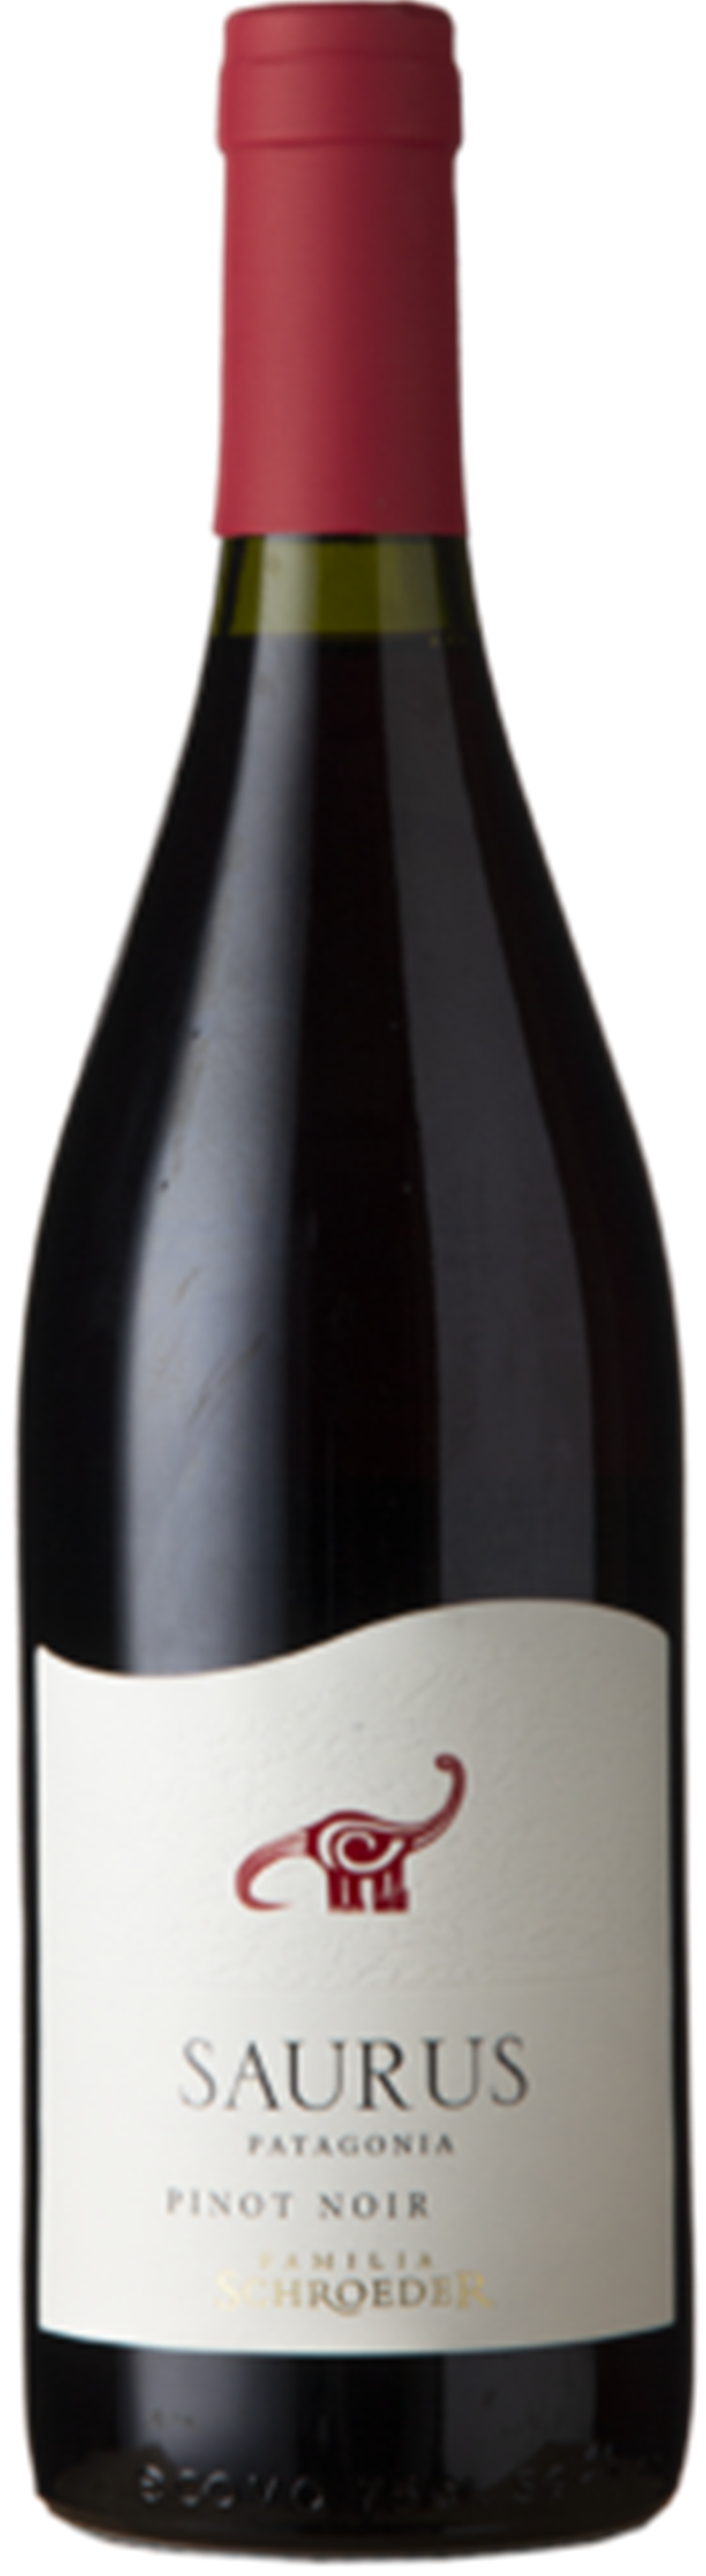 Saurus Pinot Noir 2020 Patagonië